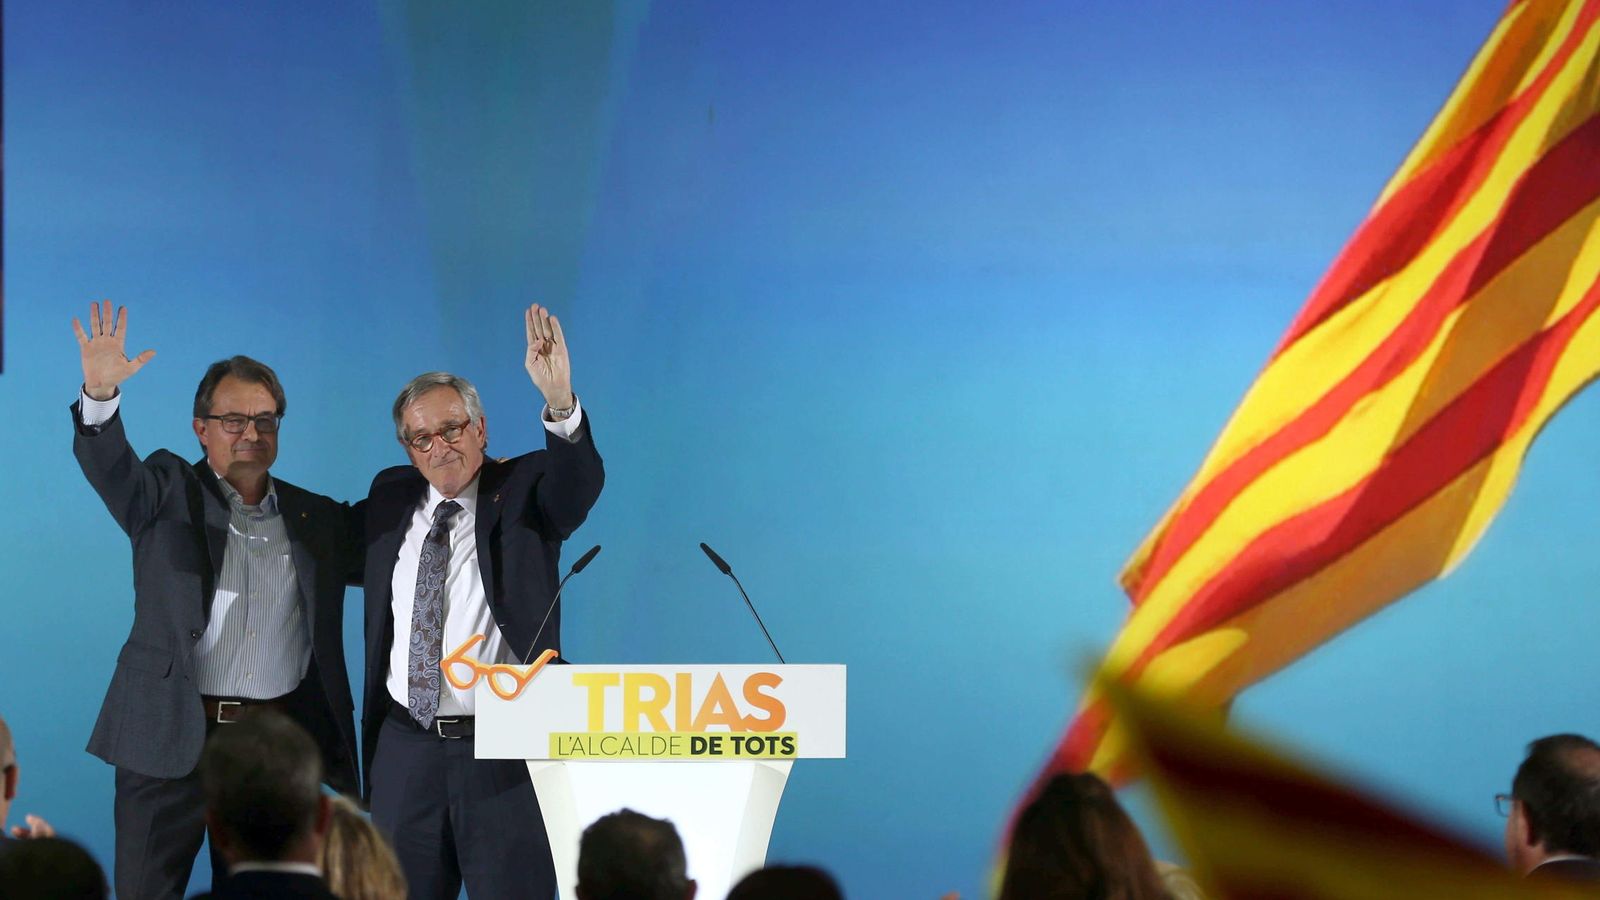 Foto: El alcalde y candidato de CiU, Xavier Trias, a acompañado del secretario general de CiU, del presidente de CiU y de la Generalitat, Artur Mas. (EFE)